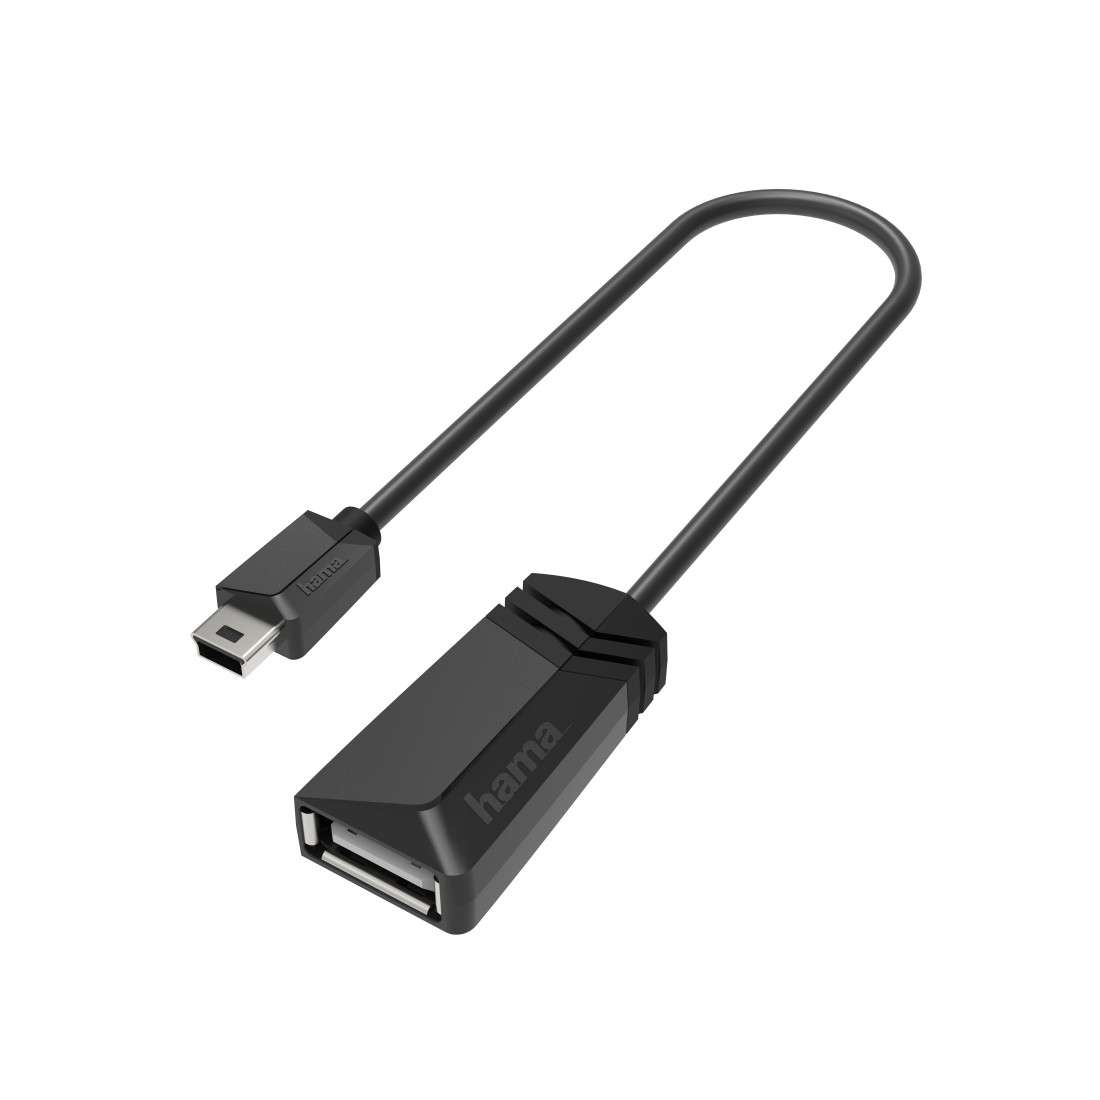 HAMA USB-OTG-Adapter, Mini-USB-Stecker - USB-Buchse, USB 2.0, 480 Mbit/s